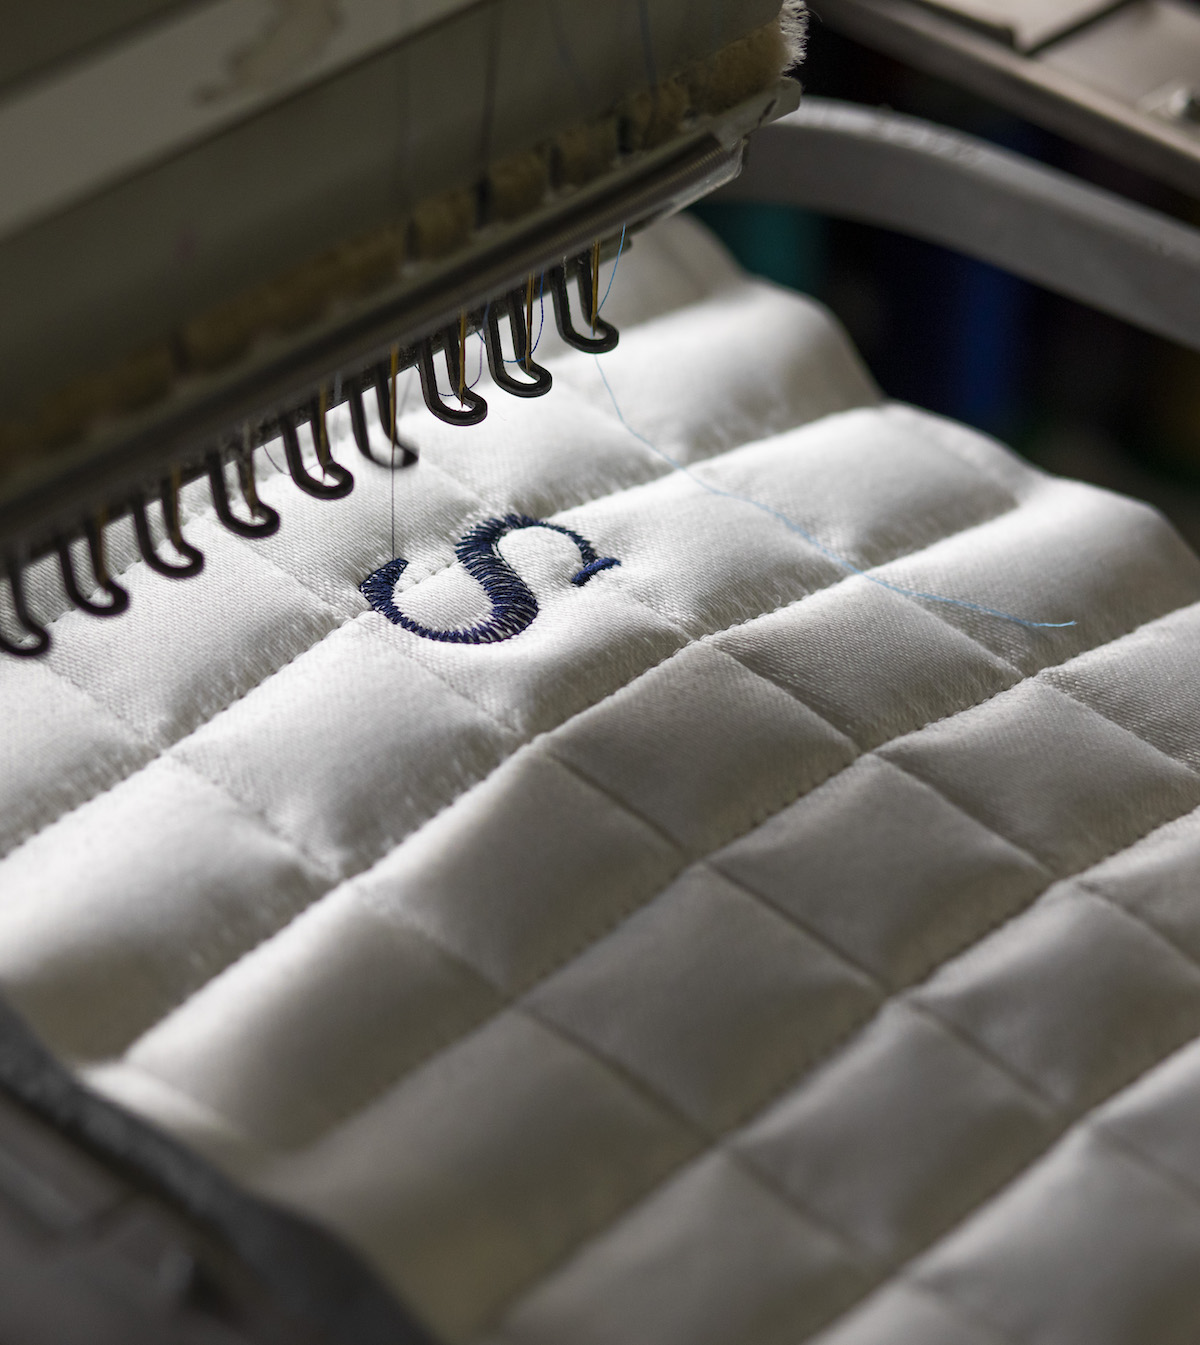 A close-up of stitching on mattress